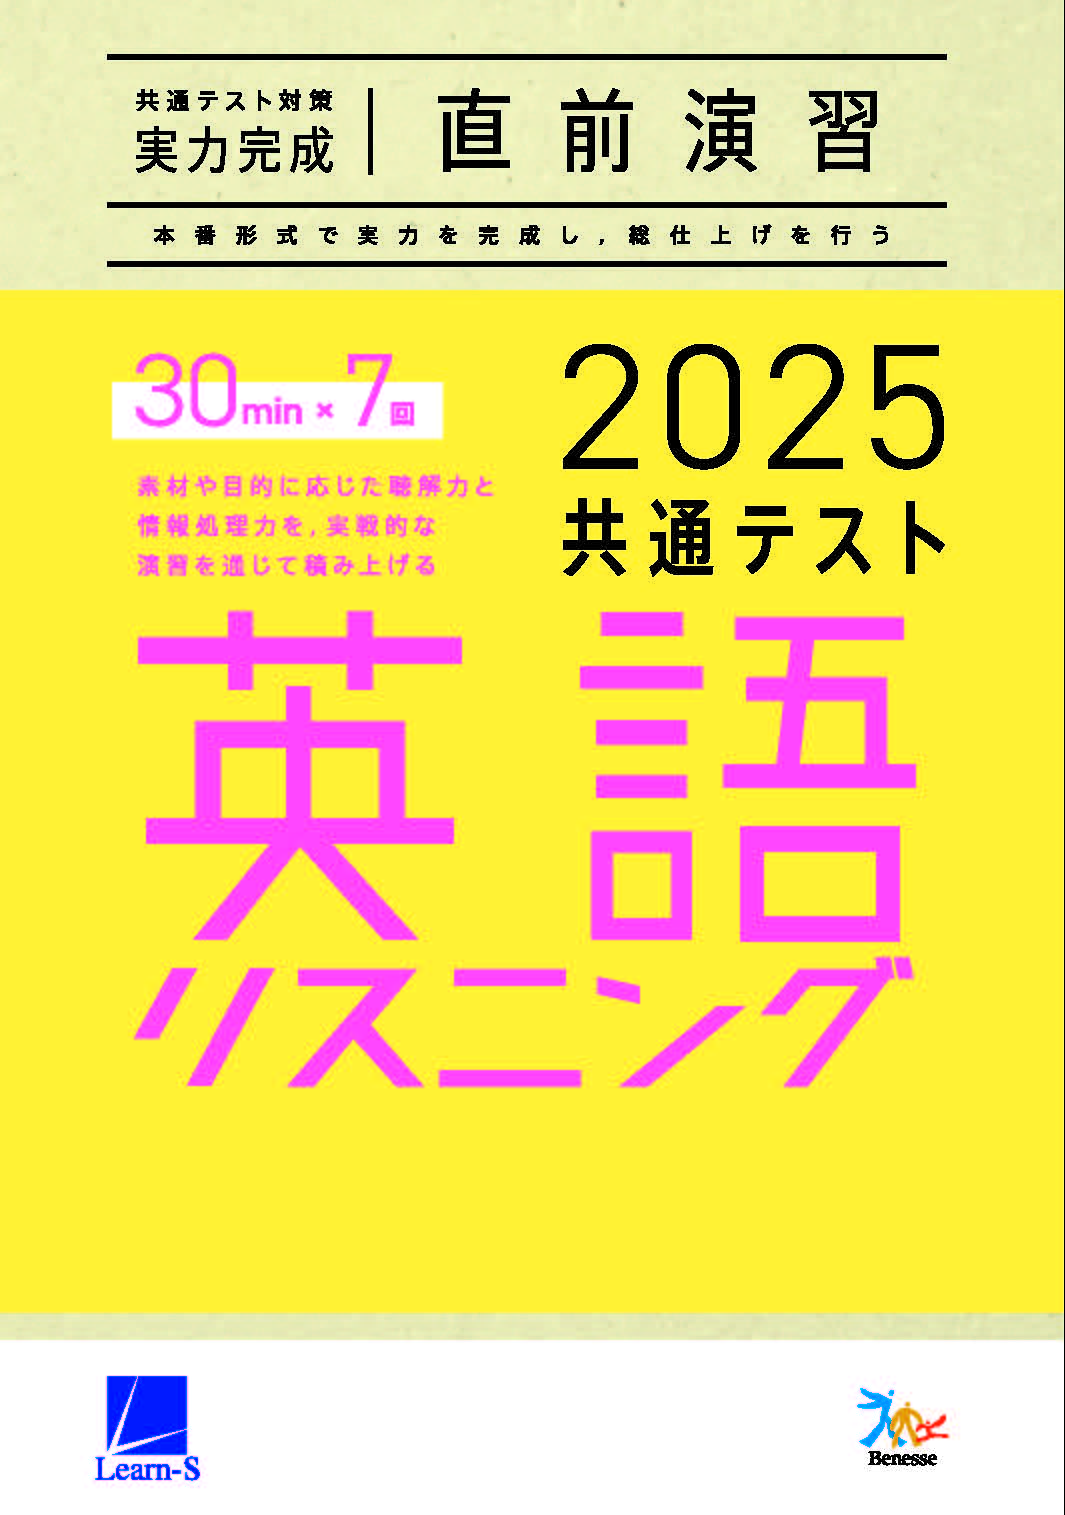 2025共通テスト対策【実力完成】直前演習 英語(リスニング)30minutes×7